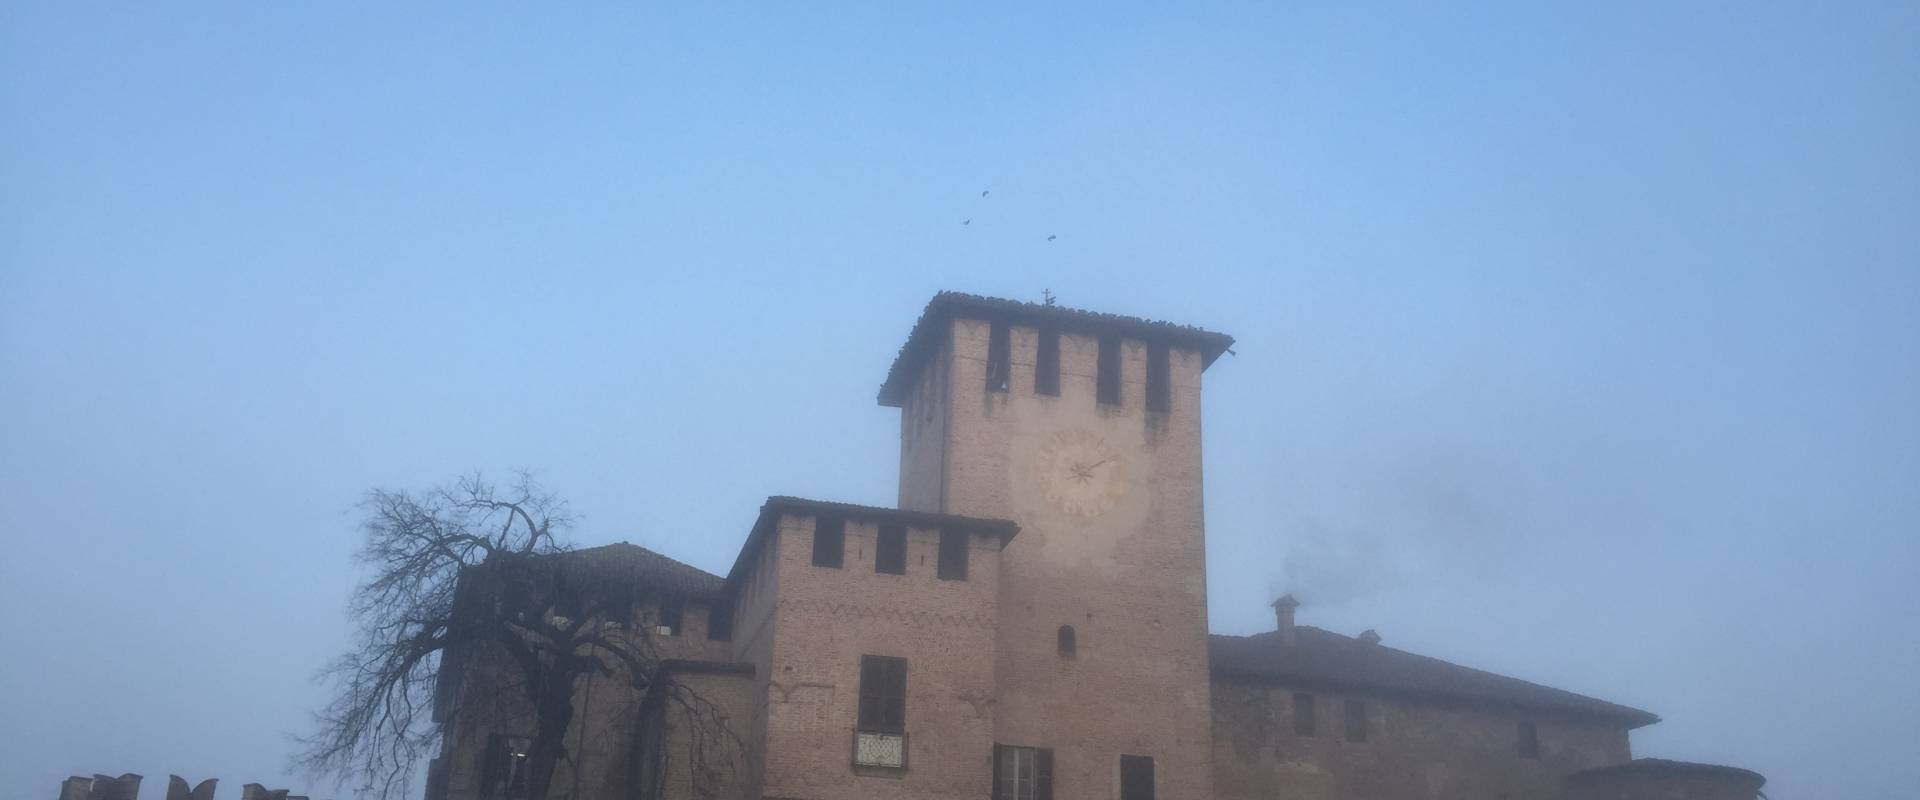 Castle of Fontanellato in winter time photo by Francesca Maffini